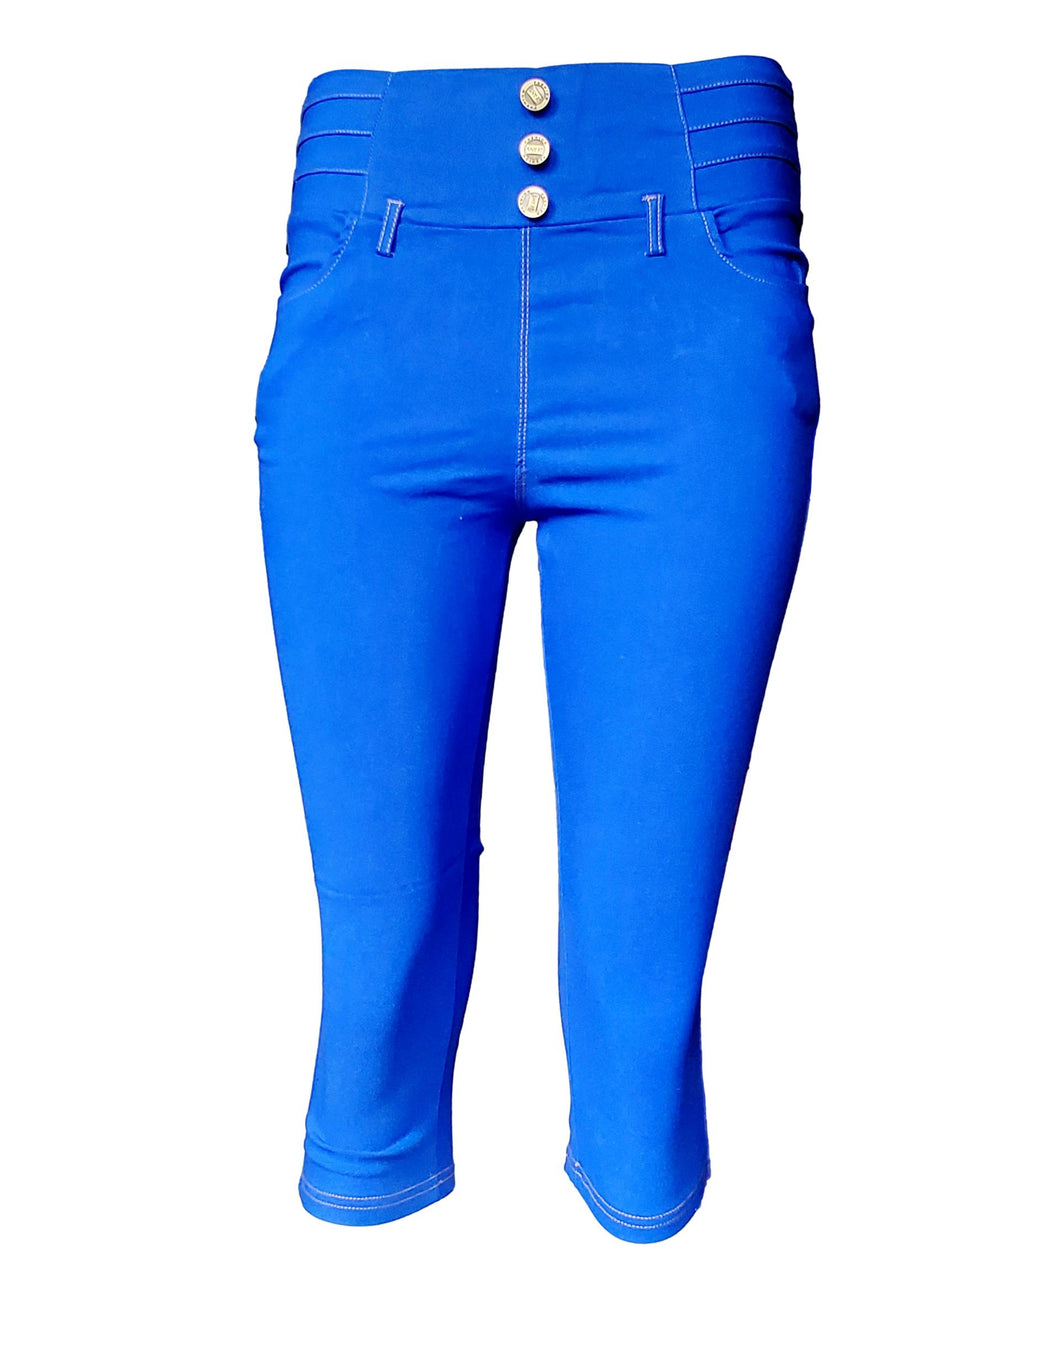 Royal blue Women's Aqua Blue High-waist Comfy and Versatile Stretch Capri Leggings